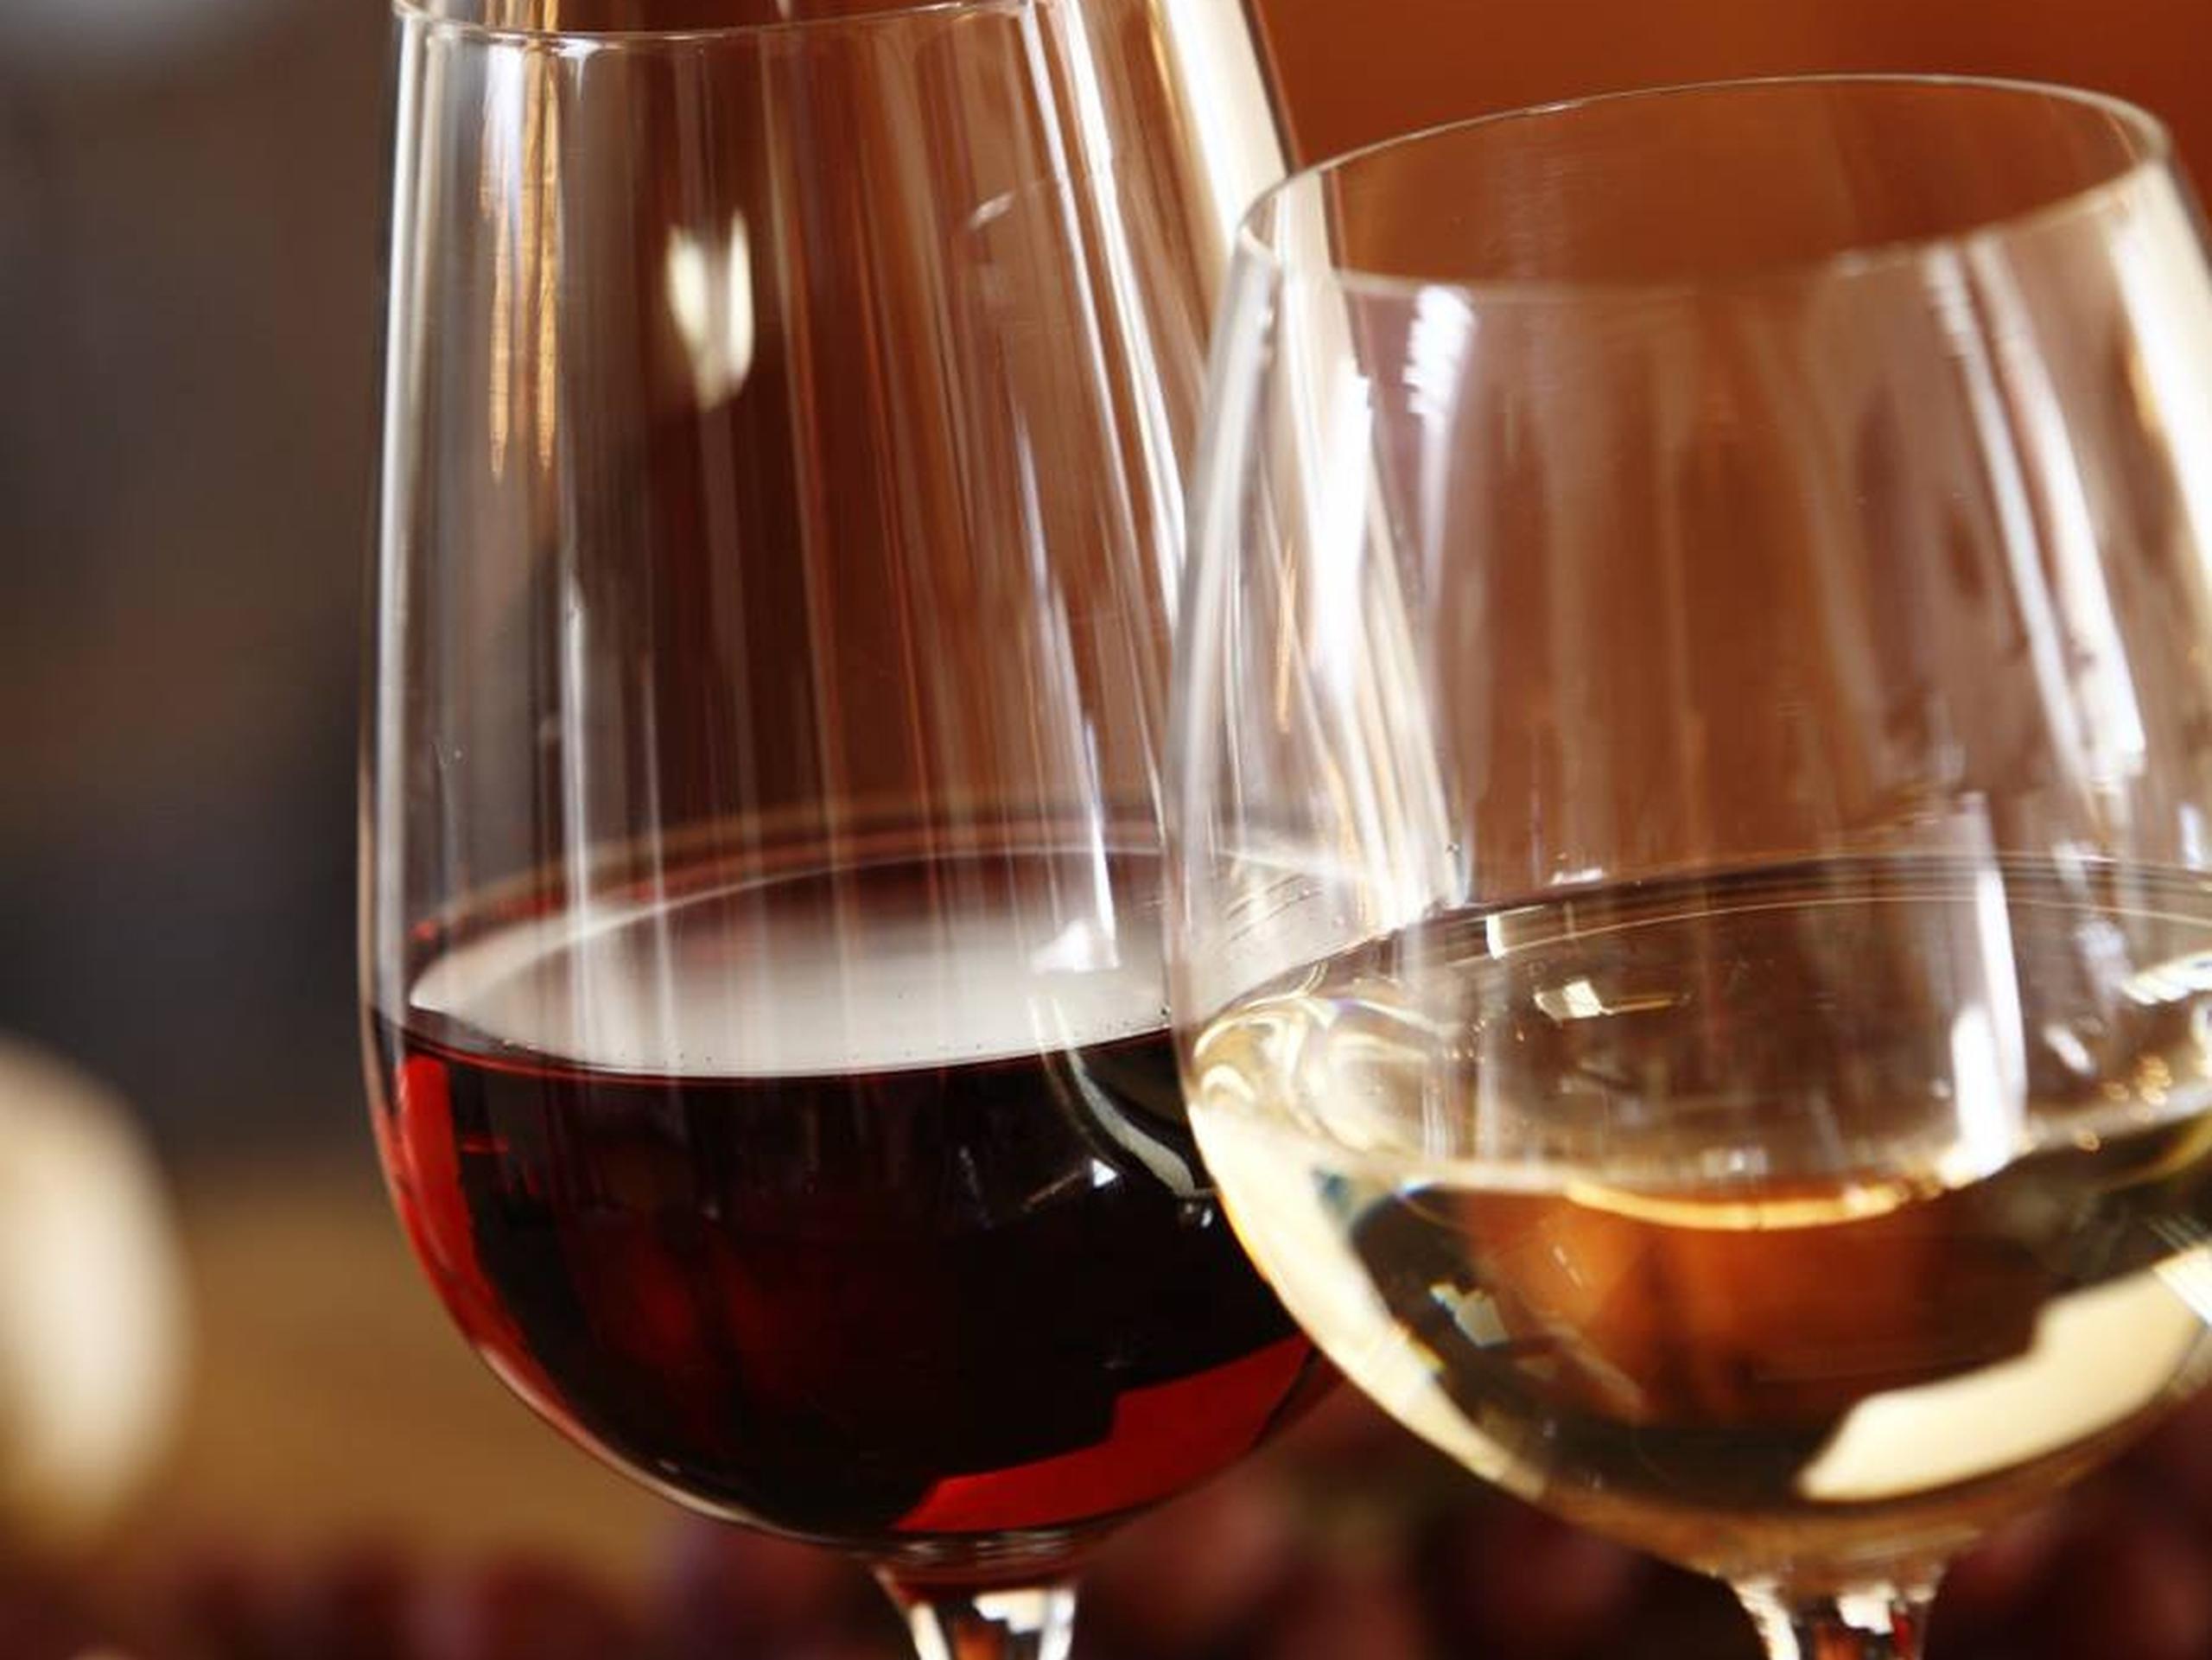 Este jueves habrá una cata virtual para conocer algunas de las alternativas de vinos para regalar.